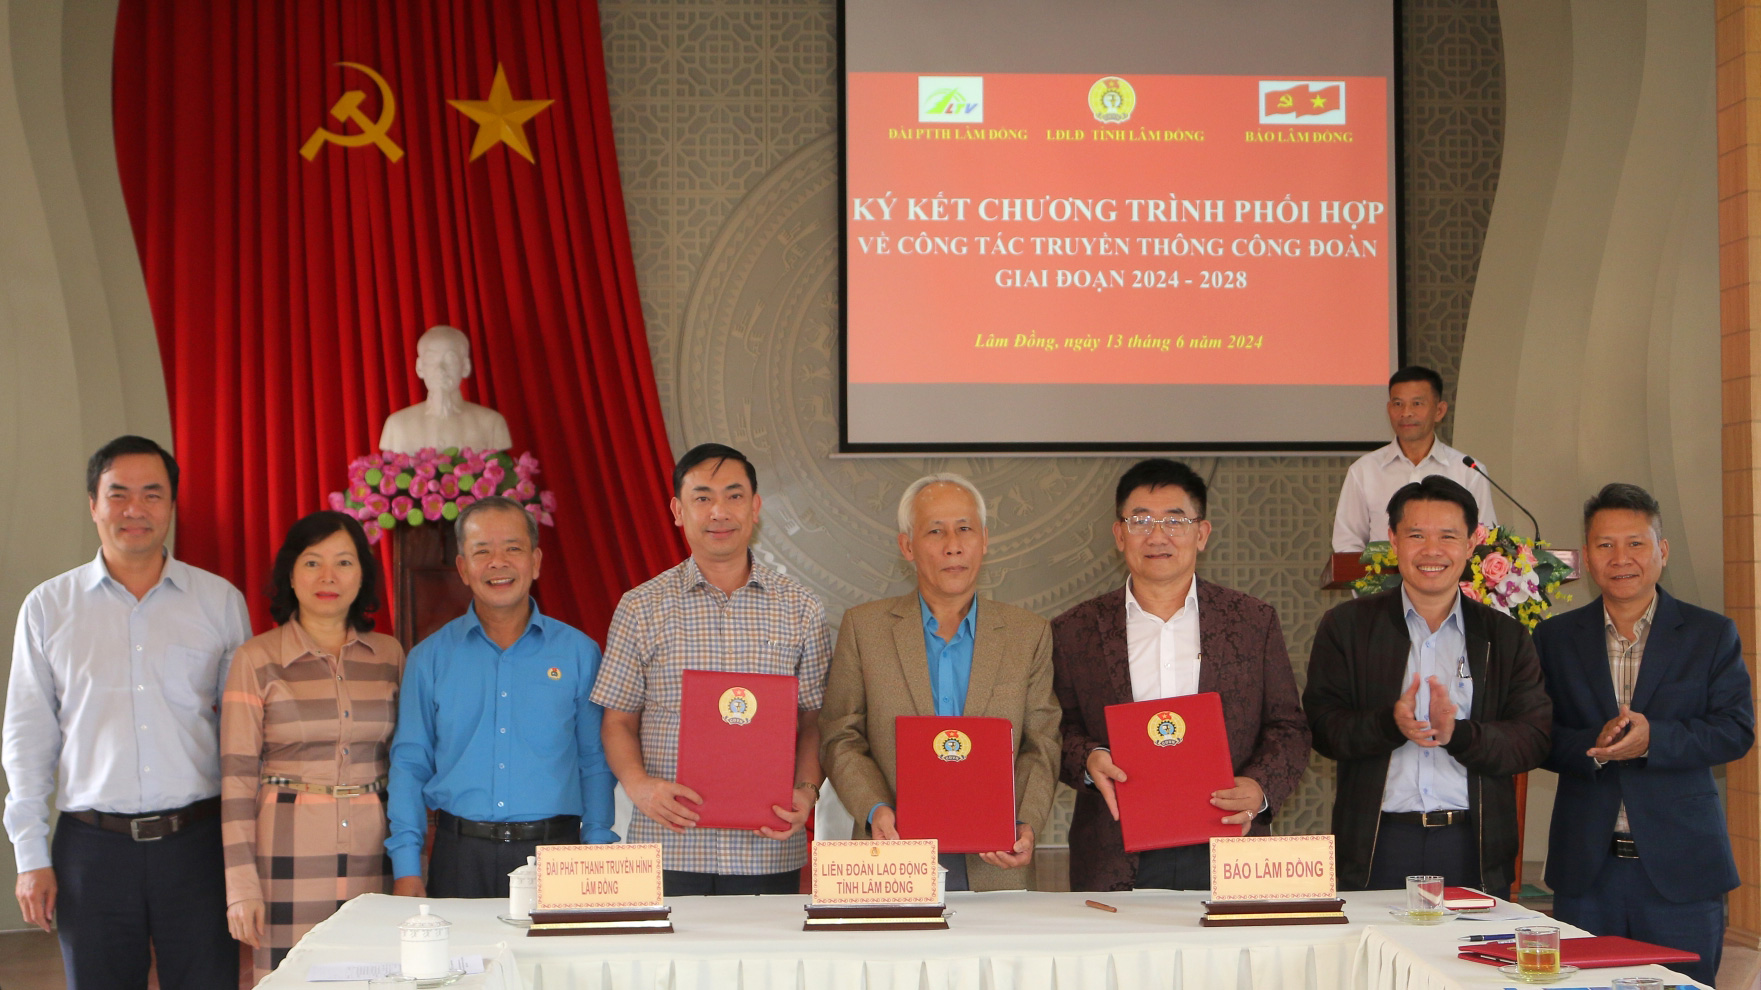 LĐLĐ tỉnh đã ký kết Chương trình phối hợp về công tác truyền thông Công đoàn với Báo Lâm Đồng và Đài PTTH tỉnh giai đoạn 2024 - 2028